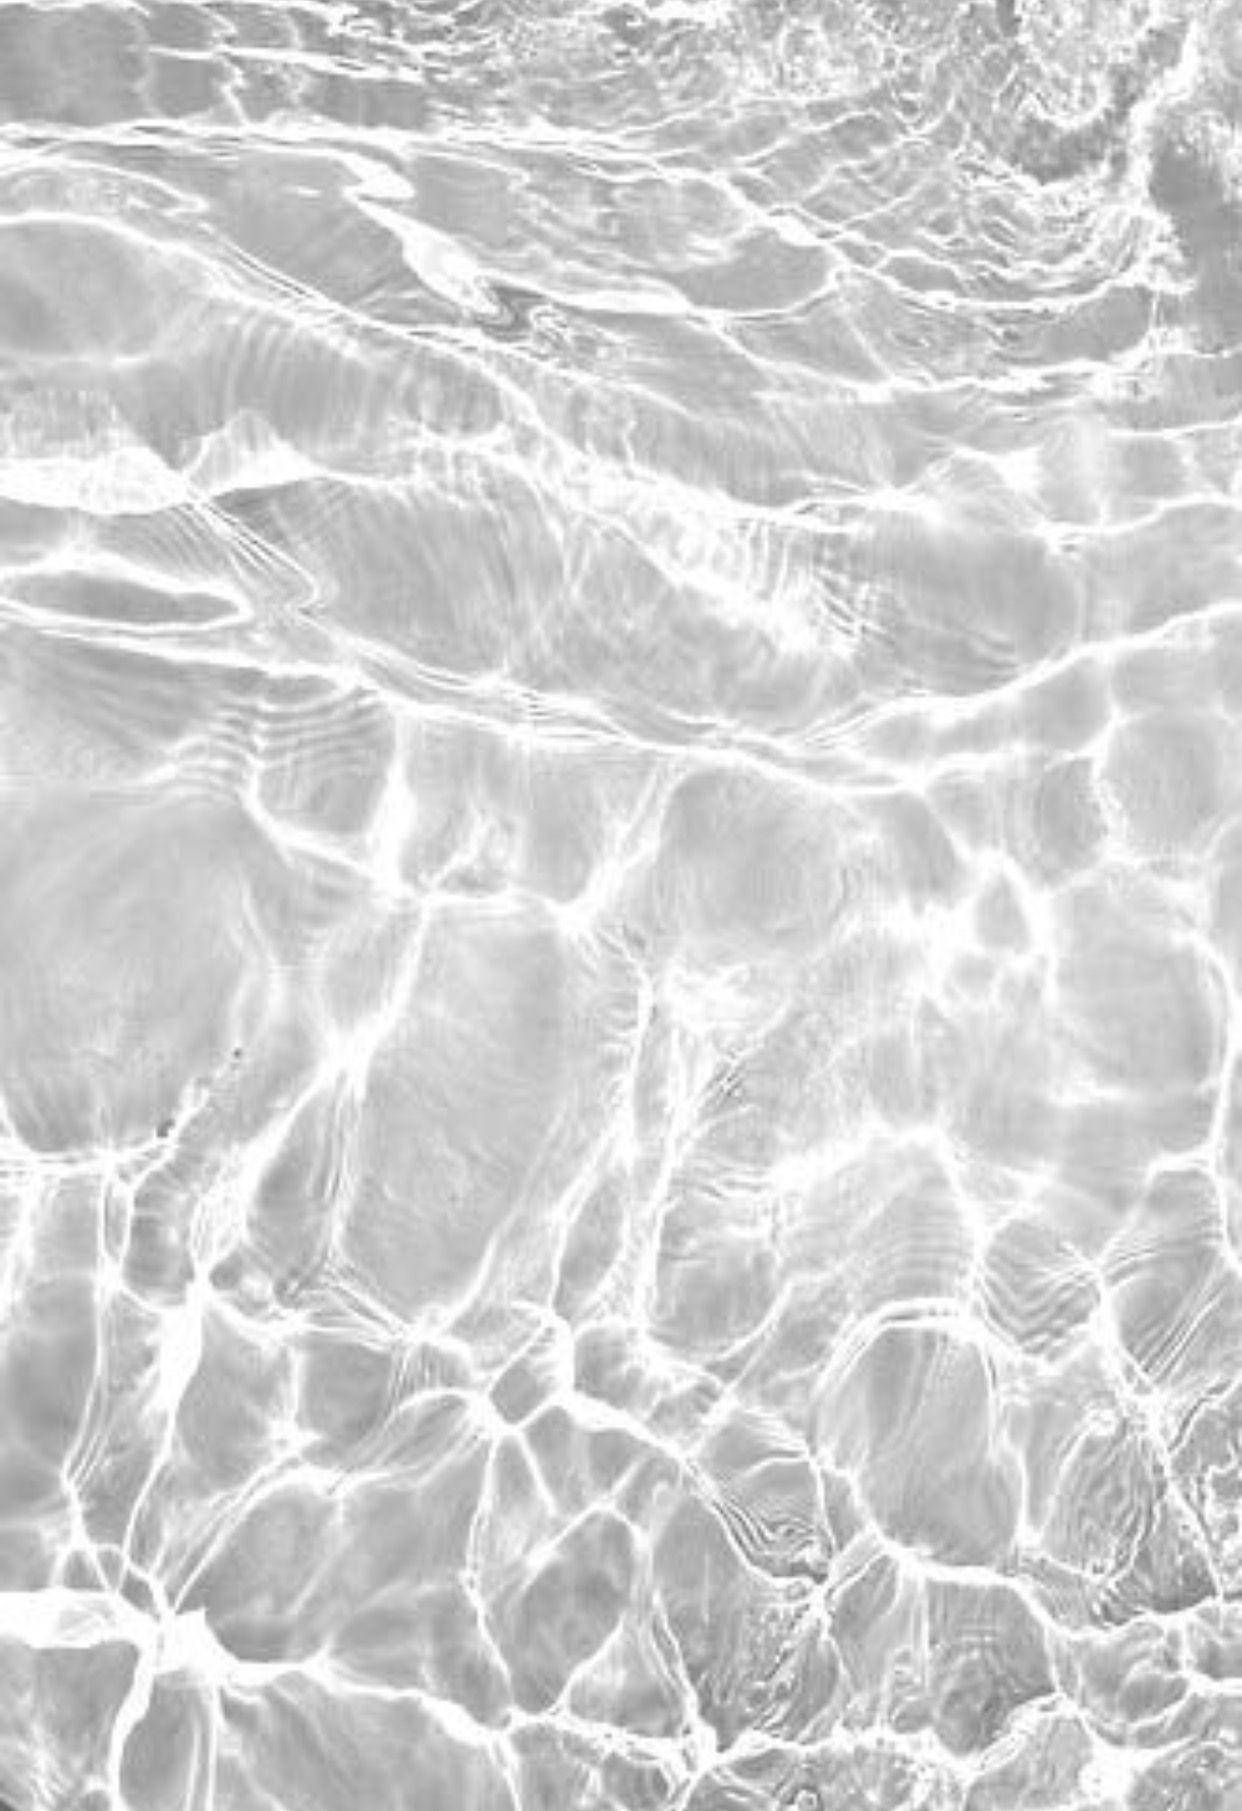 Unafotografía En Blanco Y Negro Del Agua En El Océano. Fondo de pantalla